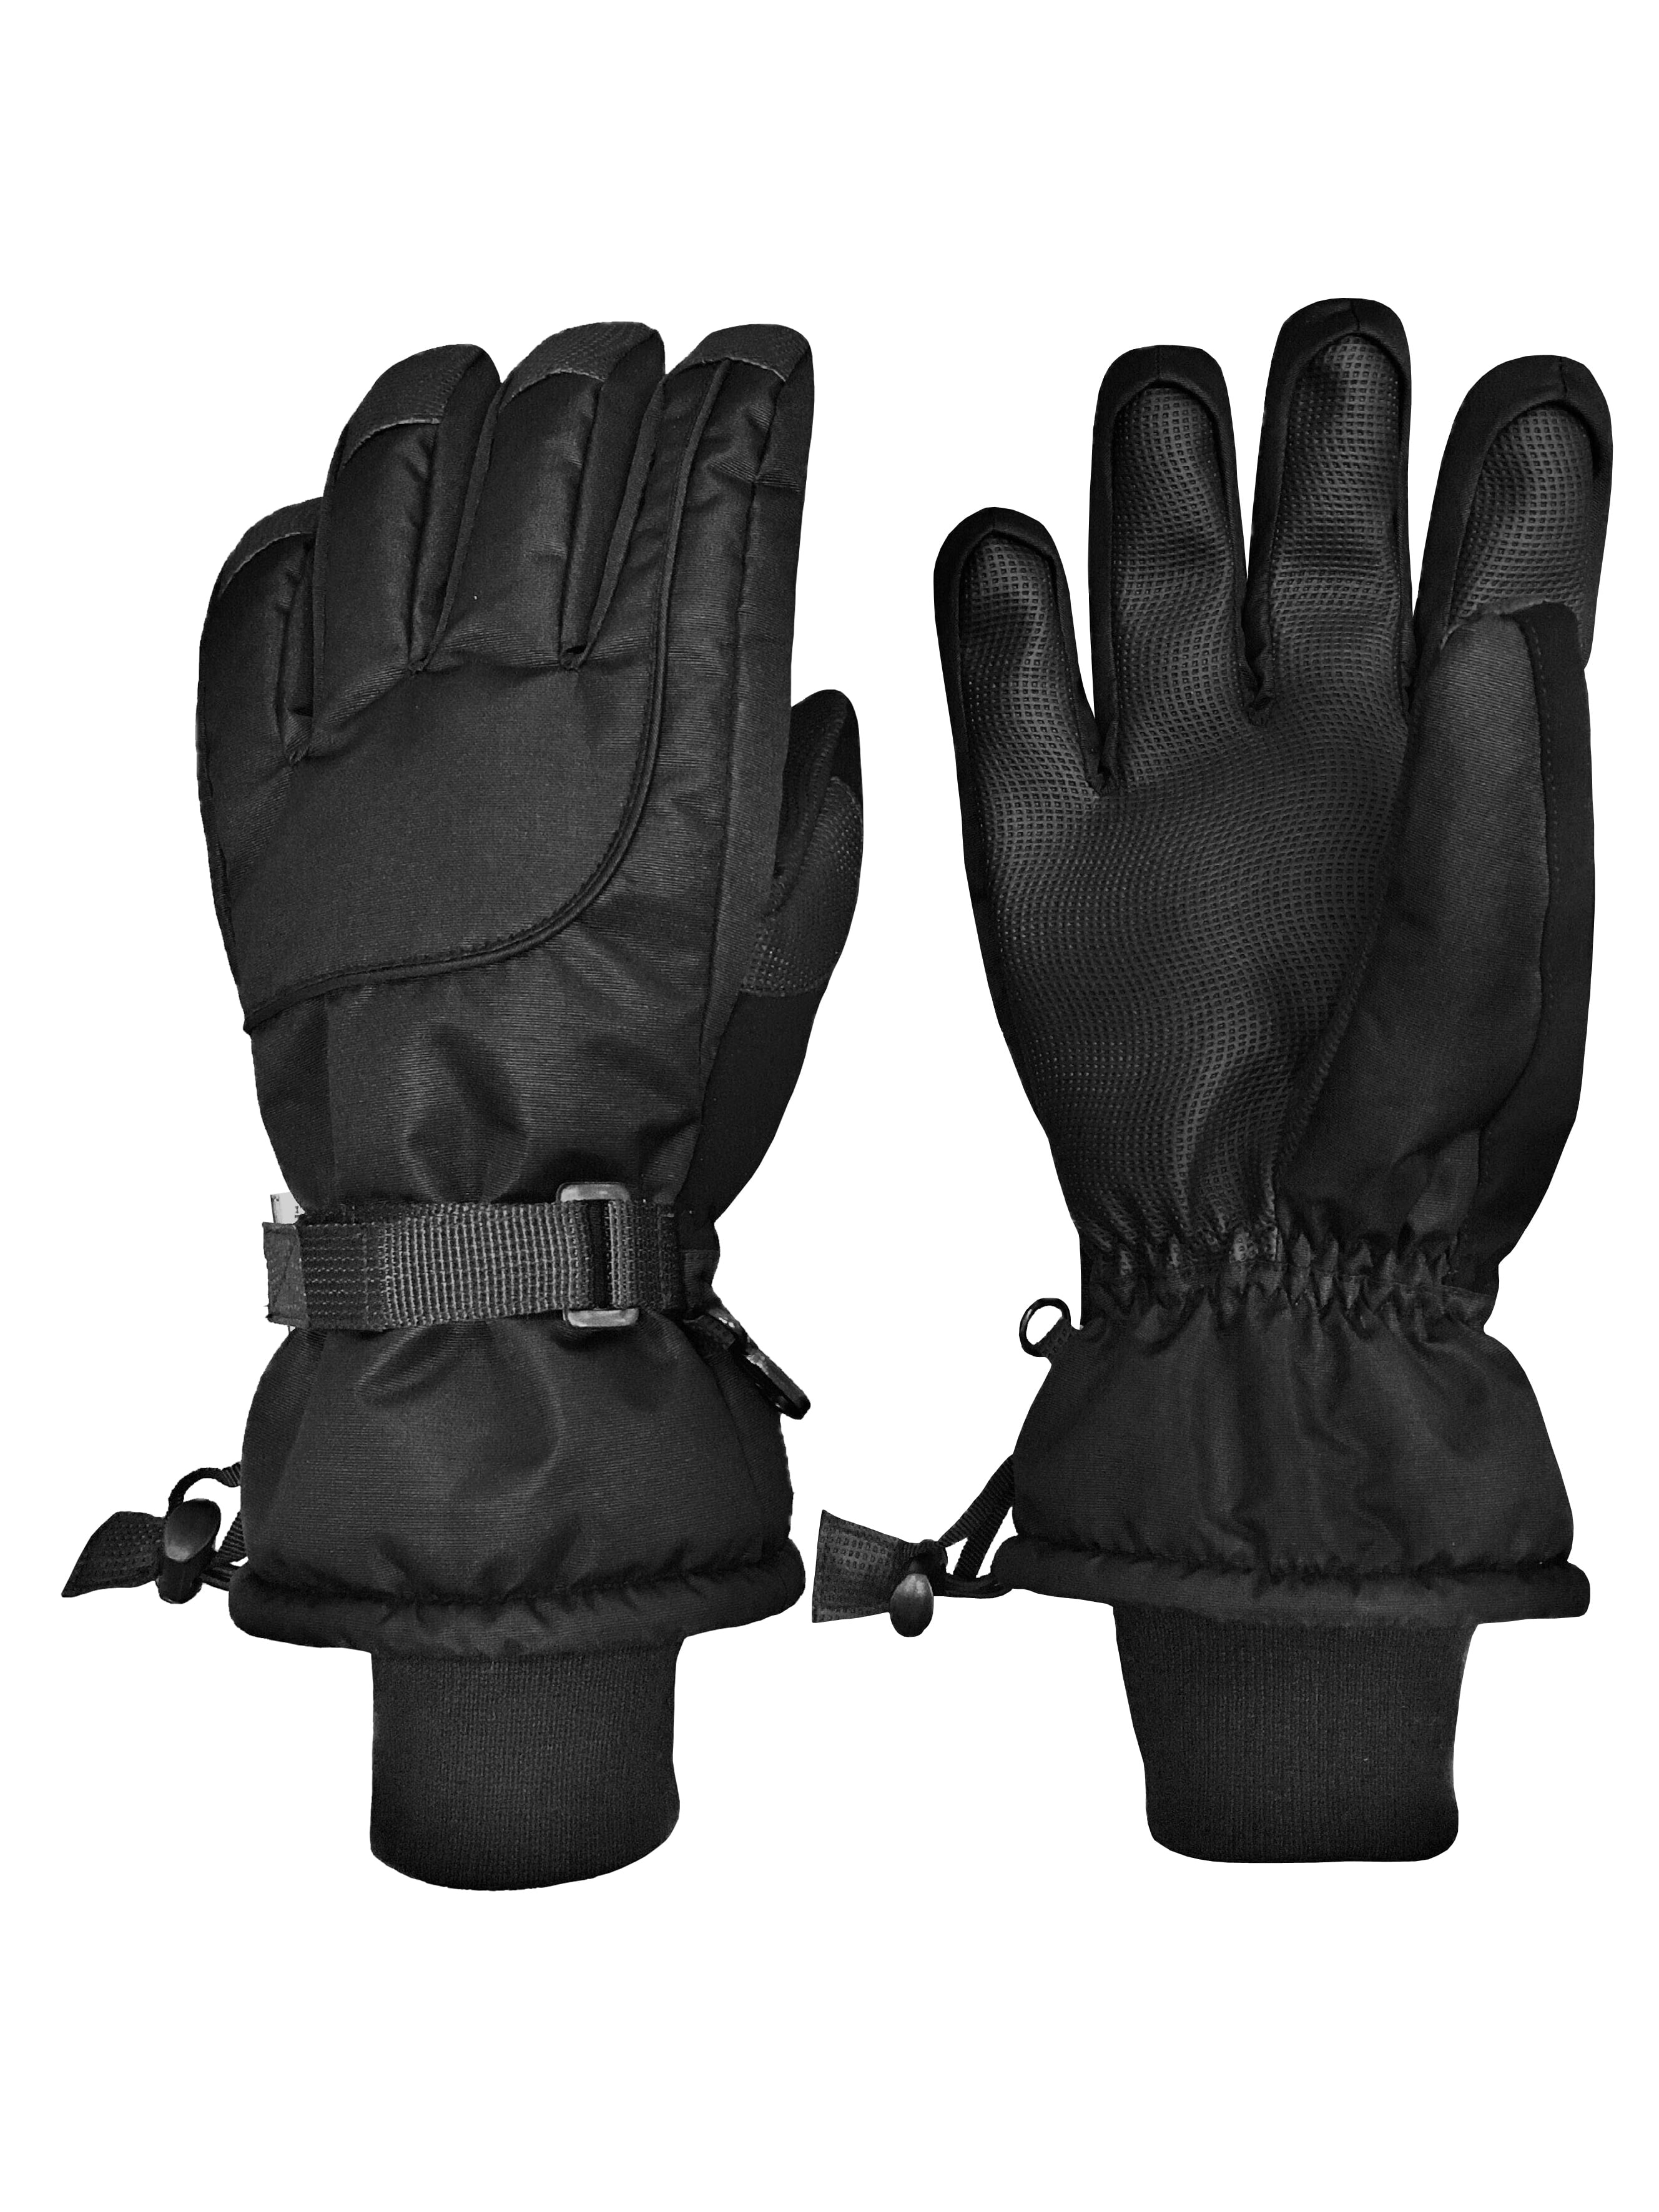 ski gloves for youth